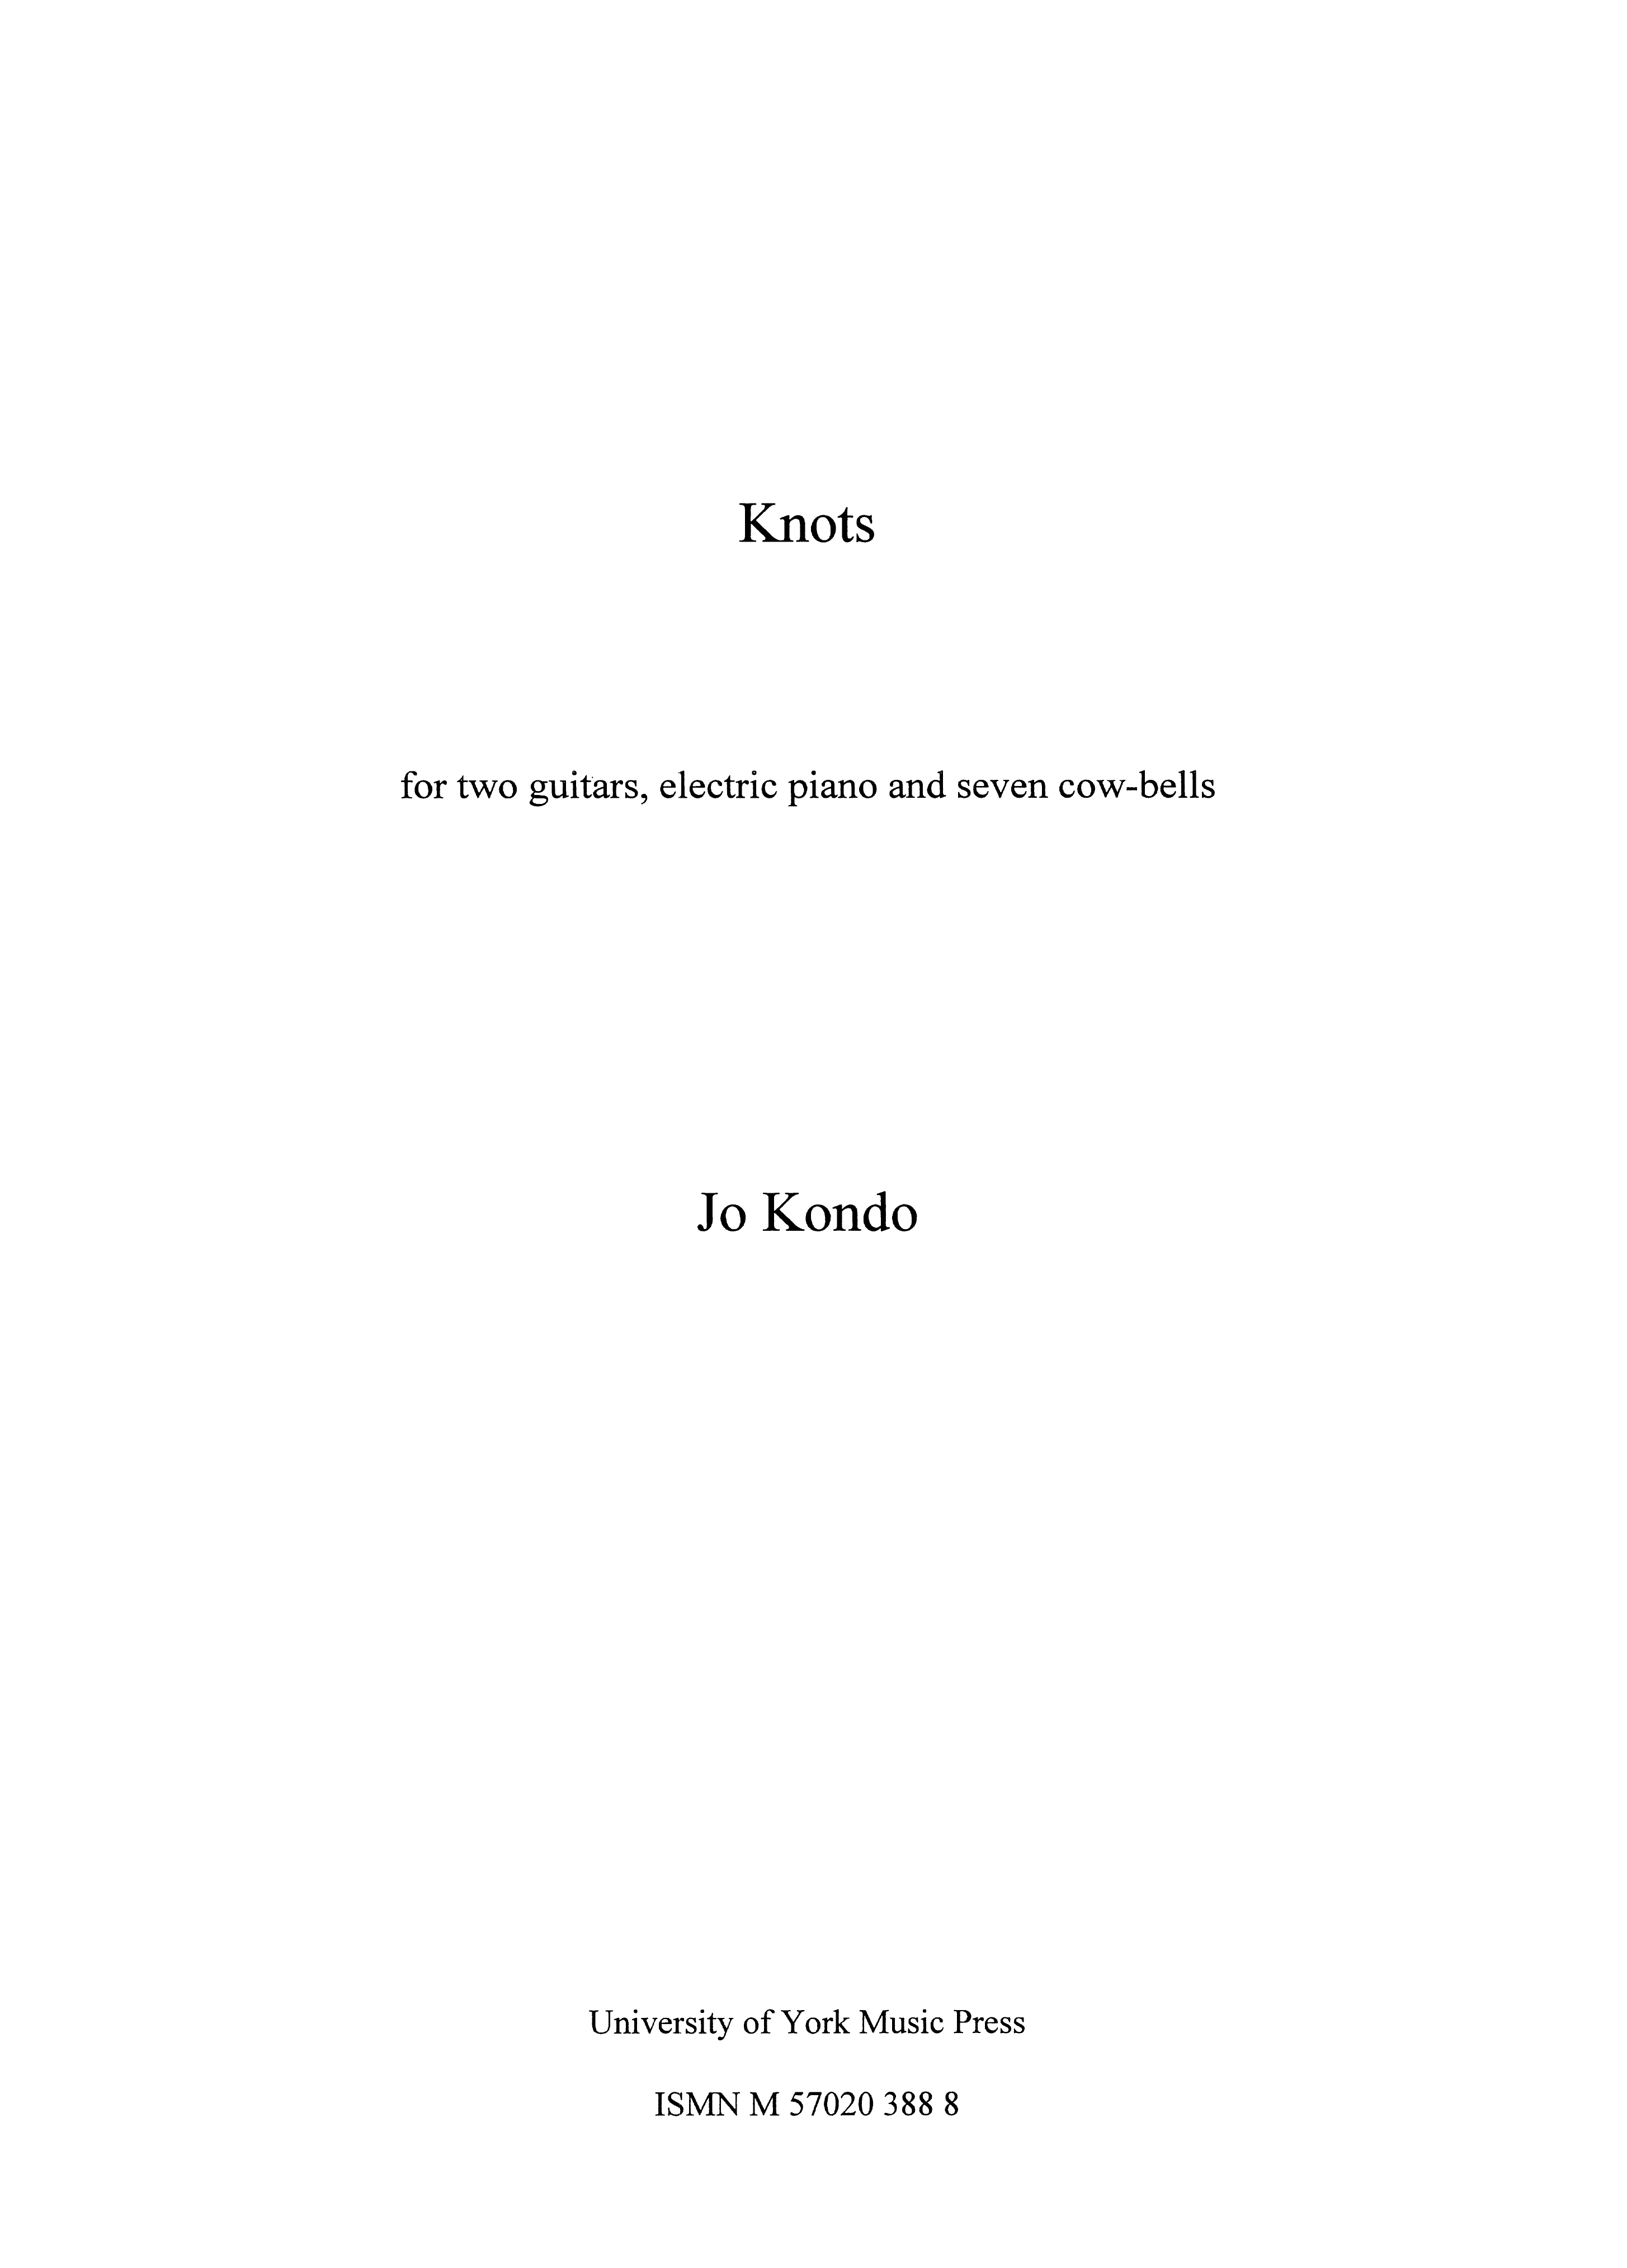 Jo Kondo: Knots: Chamber Ensemble: Score